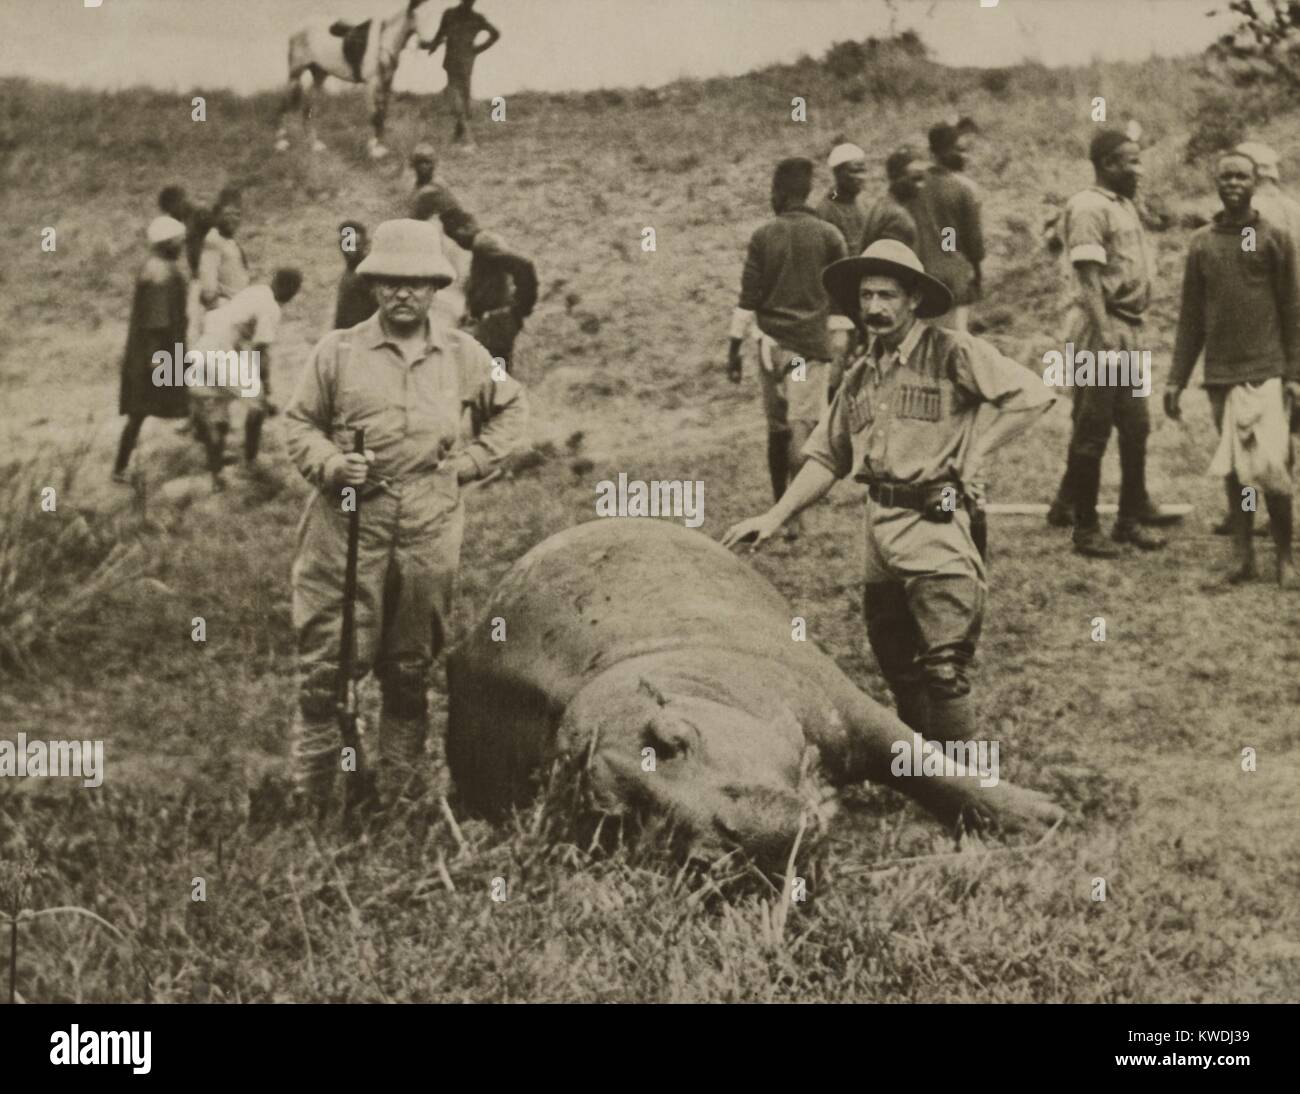 Theodore Roosevelt y hombre no identificado de pie encima de un muerto de hipopótamo. En el fondo hay trabajadores africanos que la piel del animal. Julio-dic. 1909 durante el Smithsonian-Roosevelt expedición africana (BSLOC 2017 8 9) Foto de stock